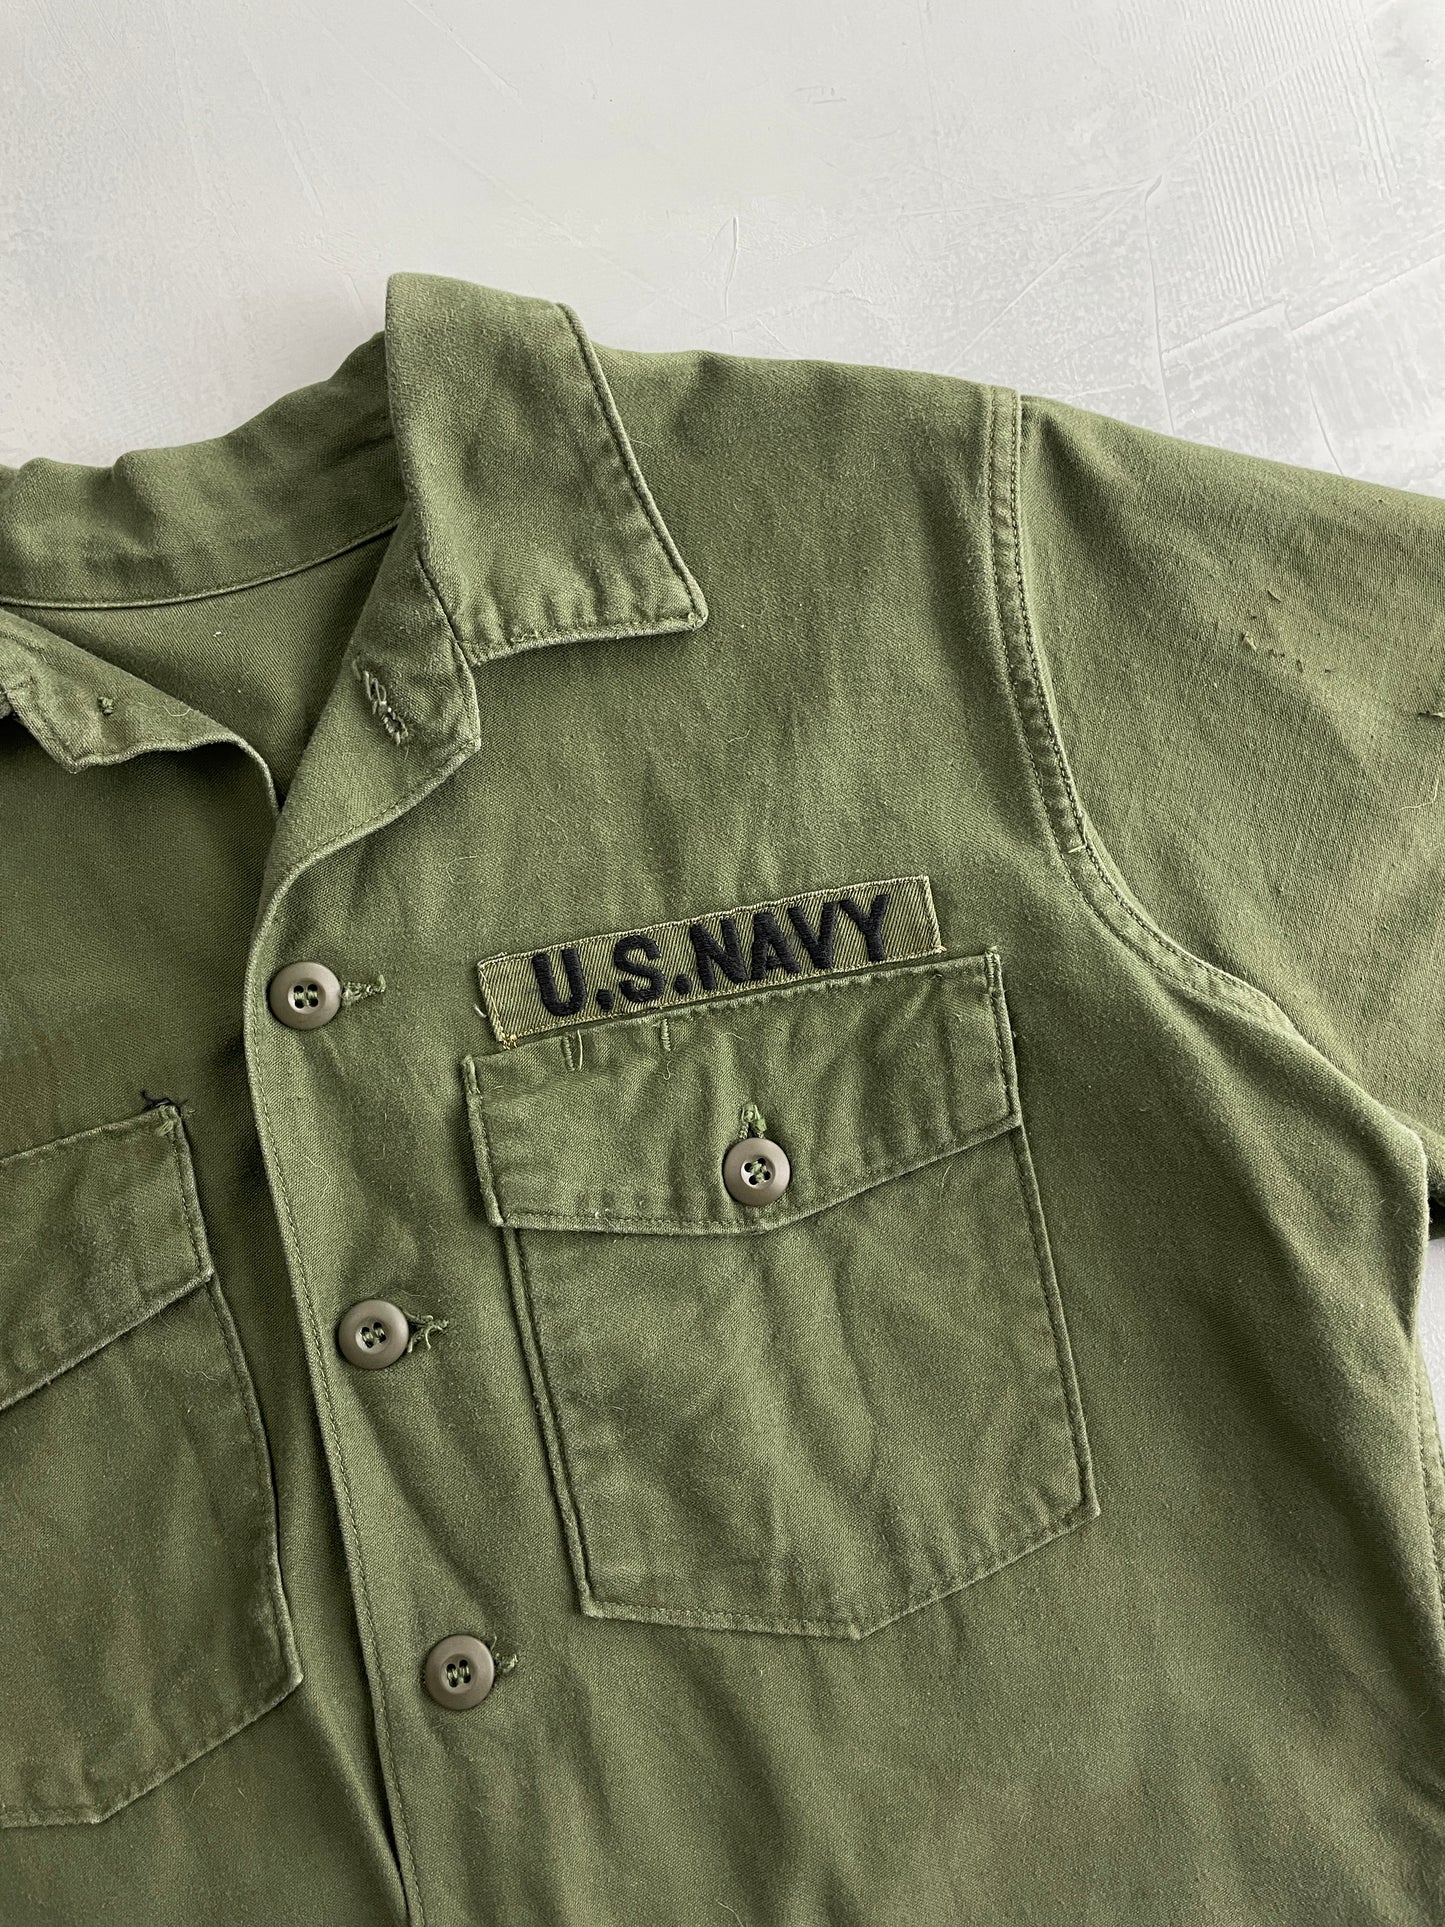 US Navy OG-107 Shirt [XL]